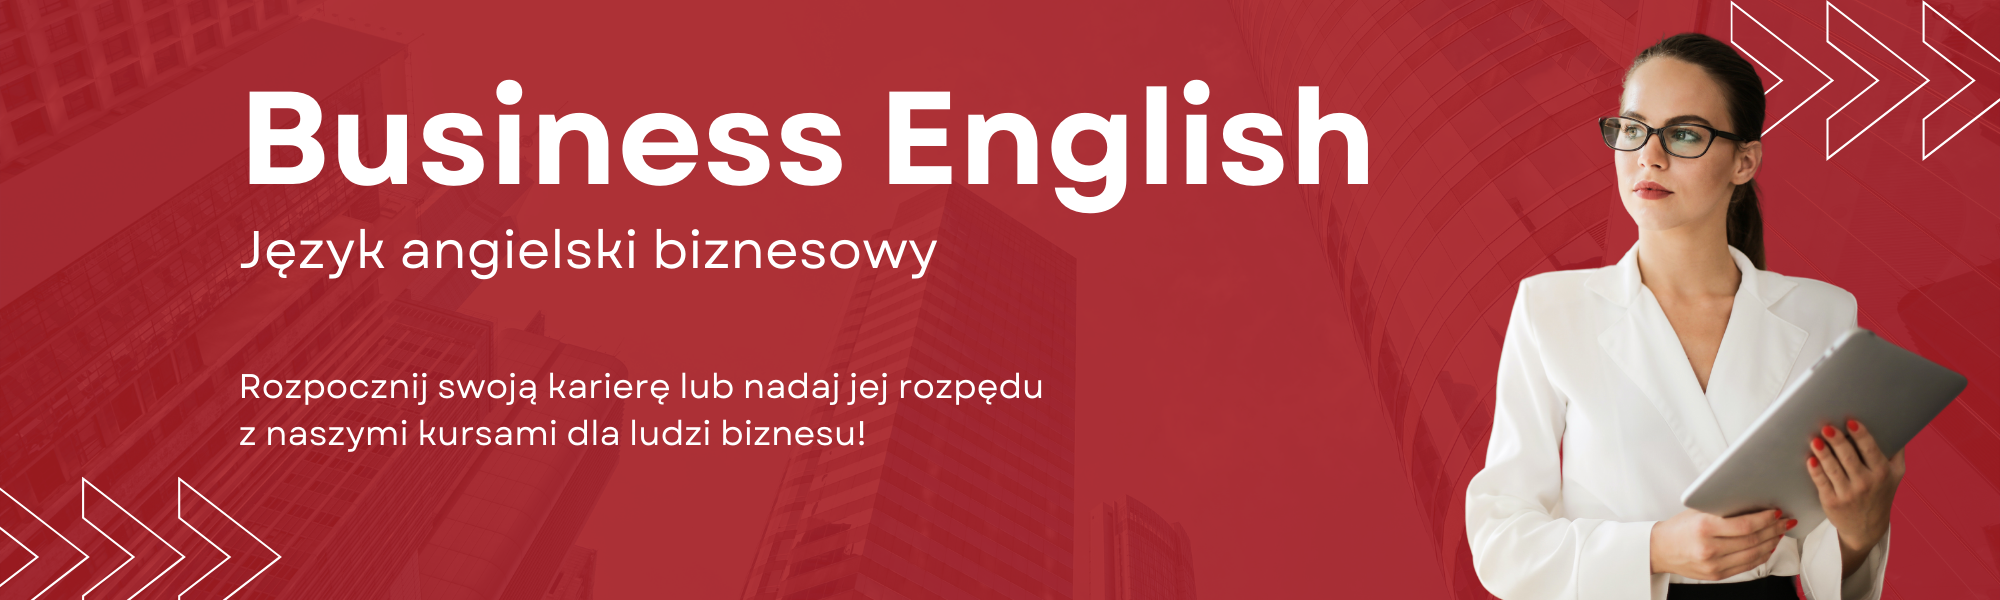 Język angielski biznesowy Business English